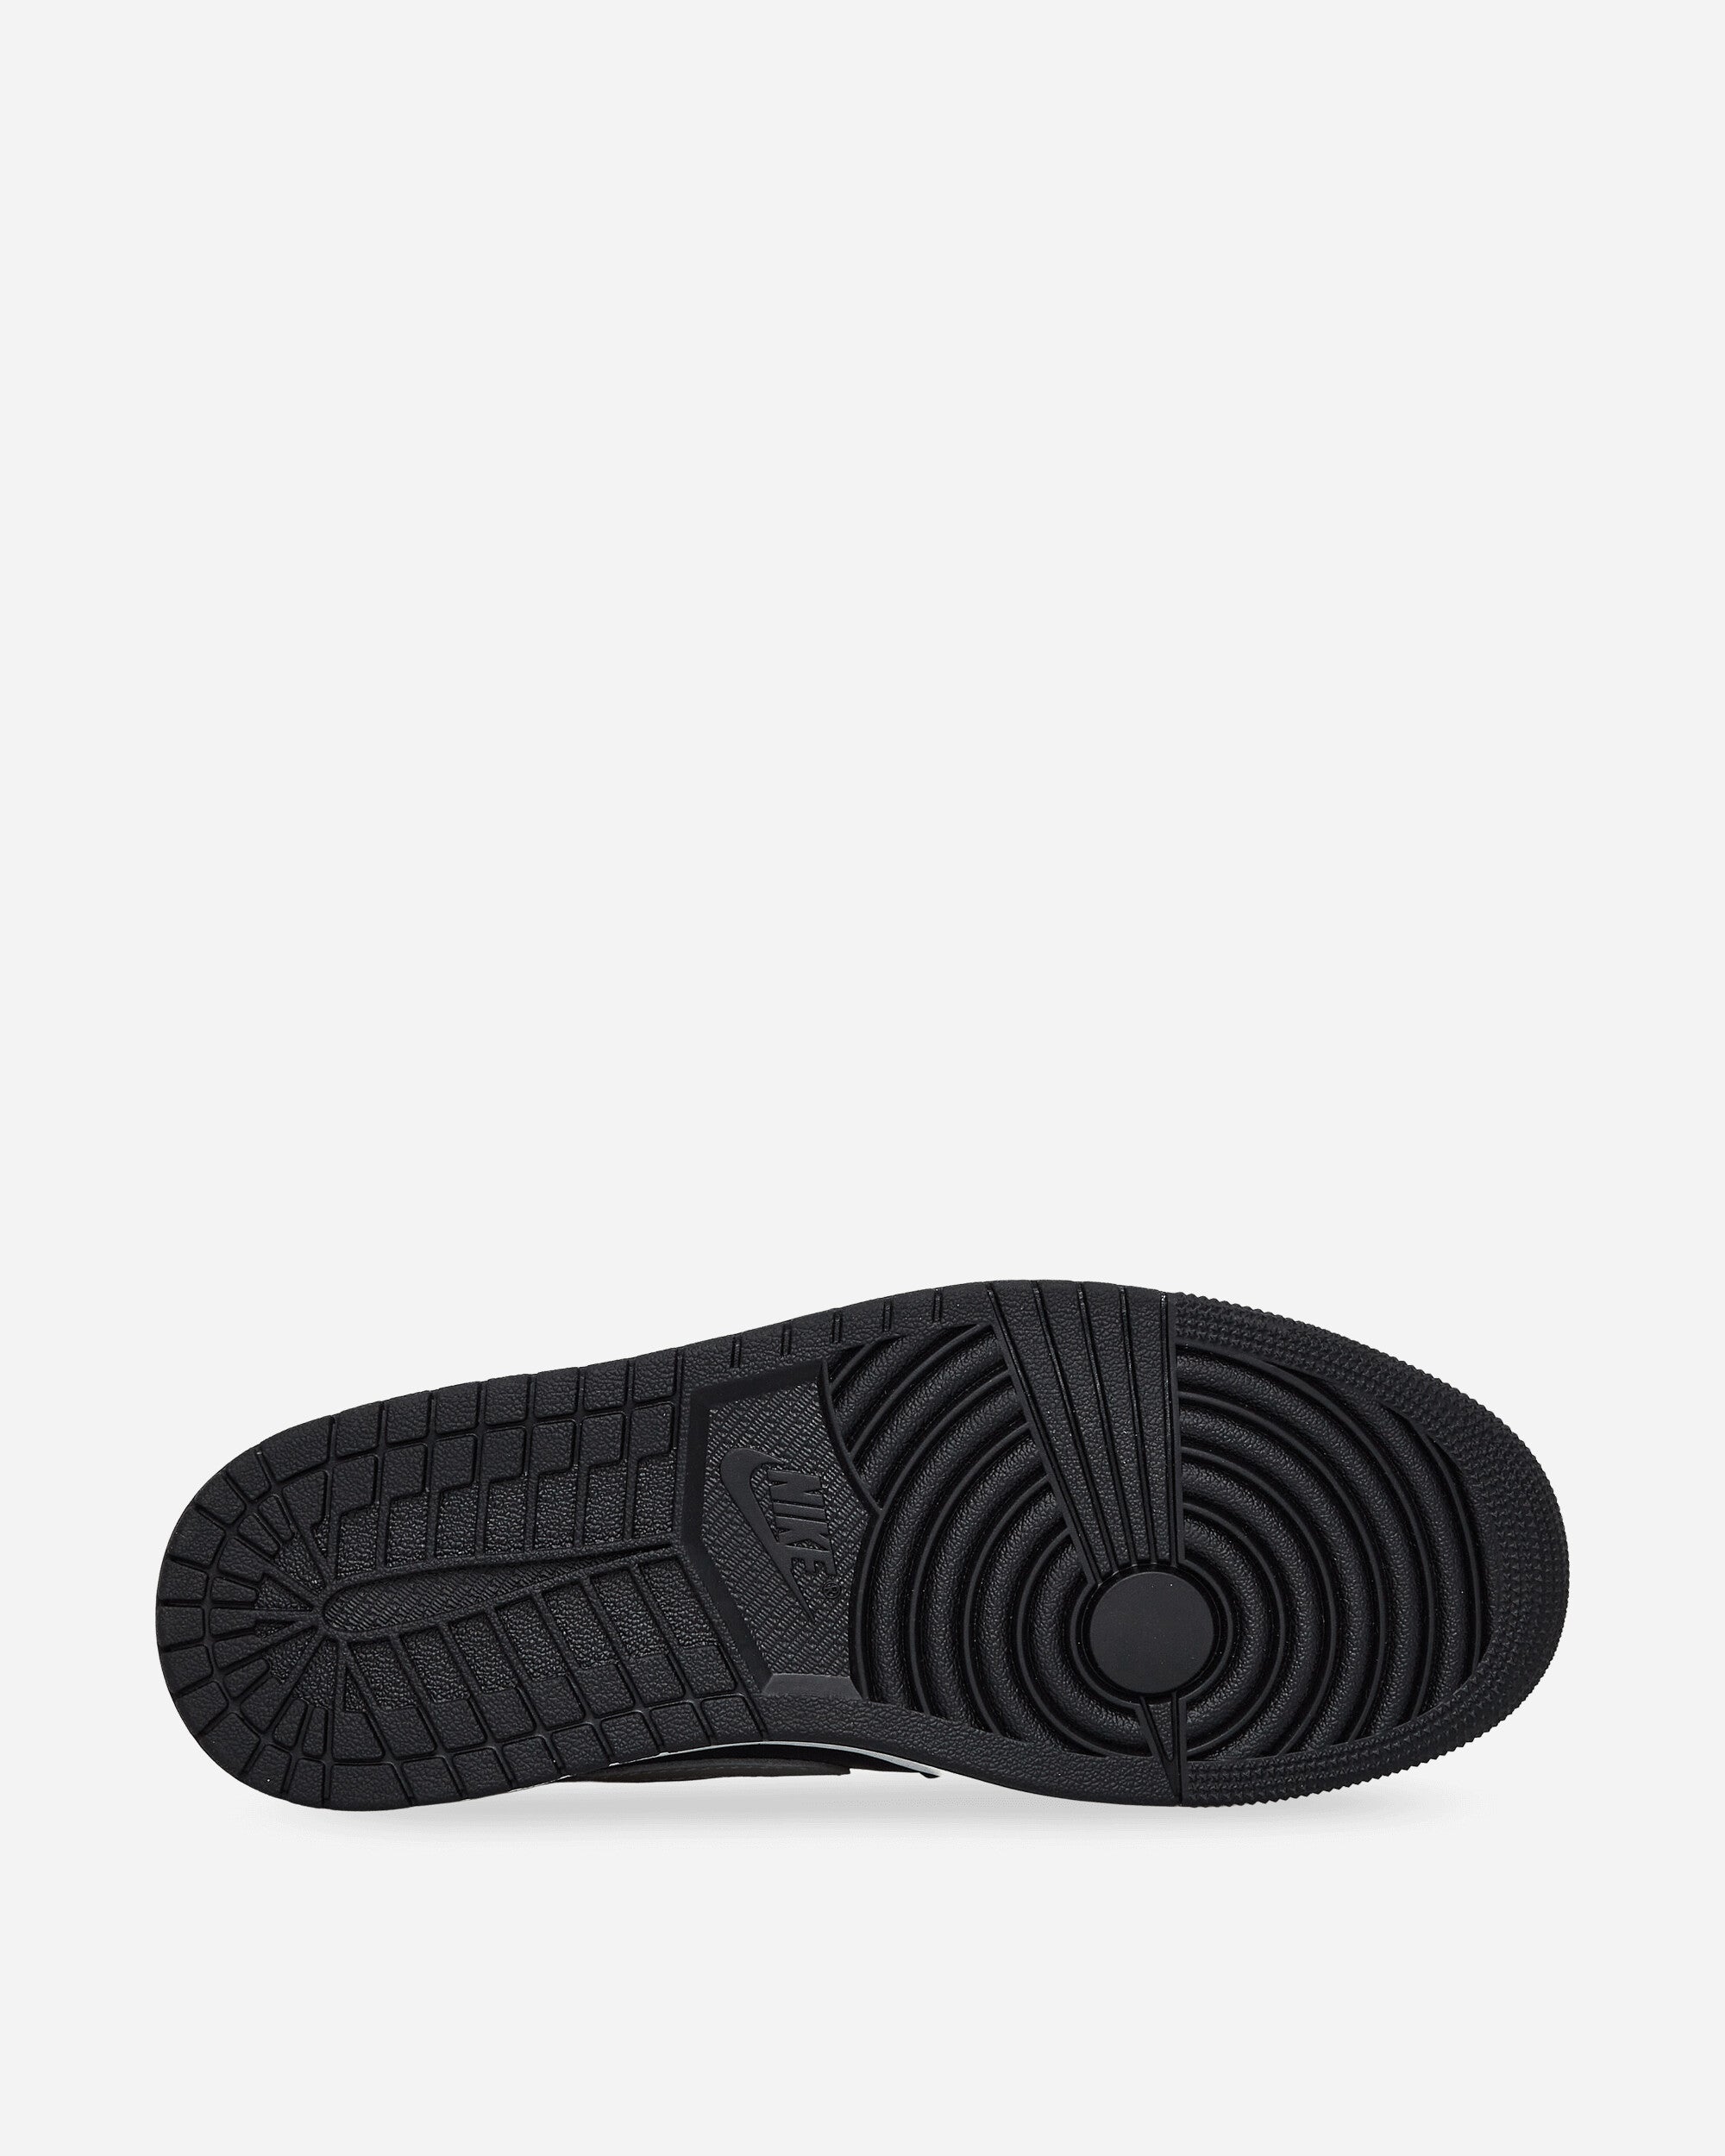 Nike Jordan Air Jordan 1 Retro Low Og Black/Medium Grey Sneakers Low CZ0790-003